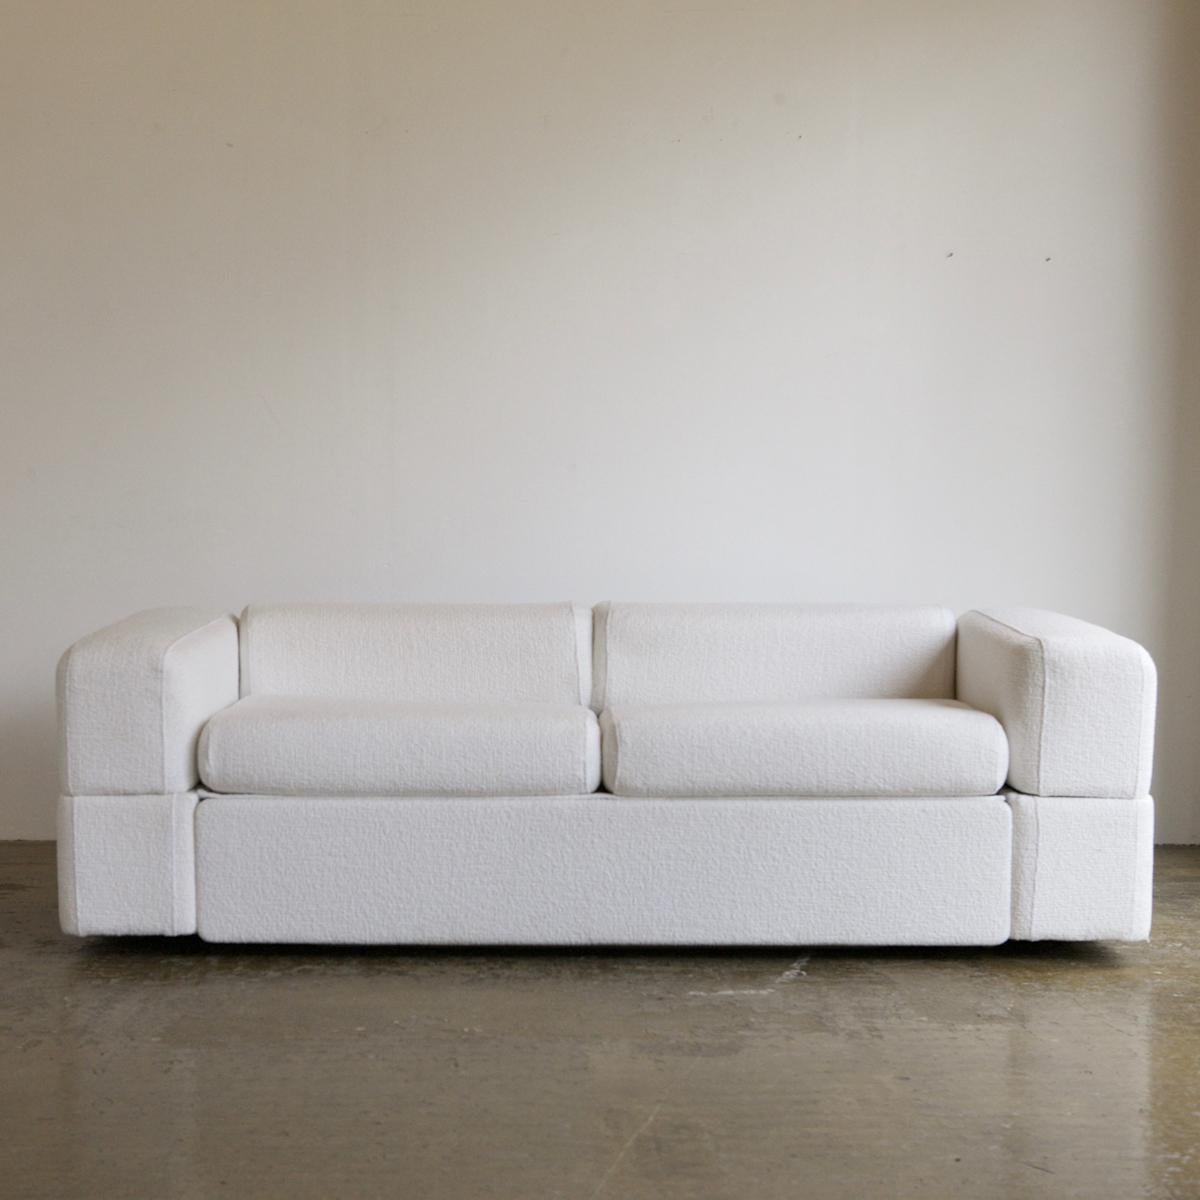 Ein ikonisches Sofa von Tito Agnoli für Cinova, neu gepolstert mit weiß gewebter, strukturierter Wolle. Ein kompaktes und superbequemes Stück mit einem minimalistischen Design. Diese Version des Agnoli-Schlafsofas hat die Besonderheit, dass ein